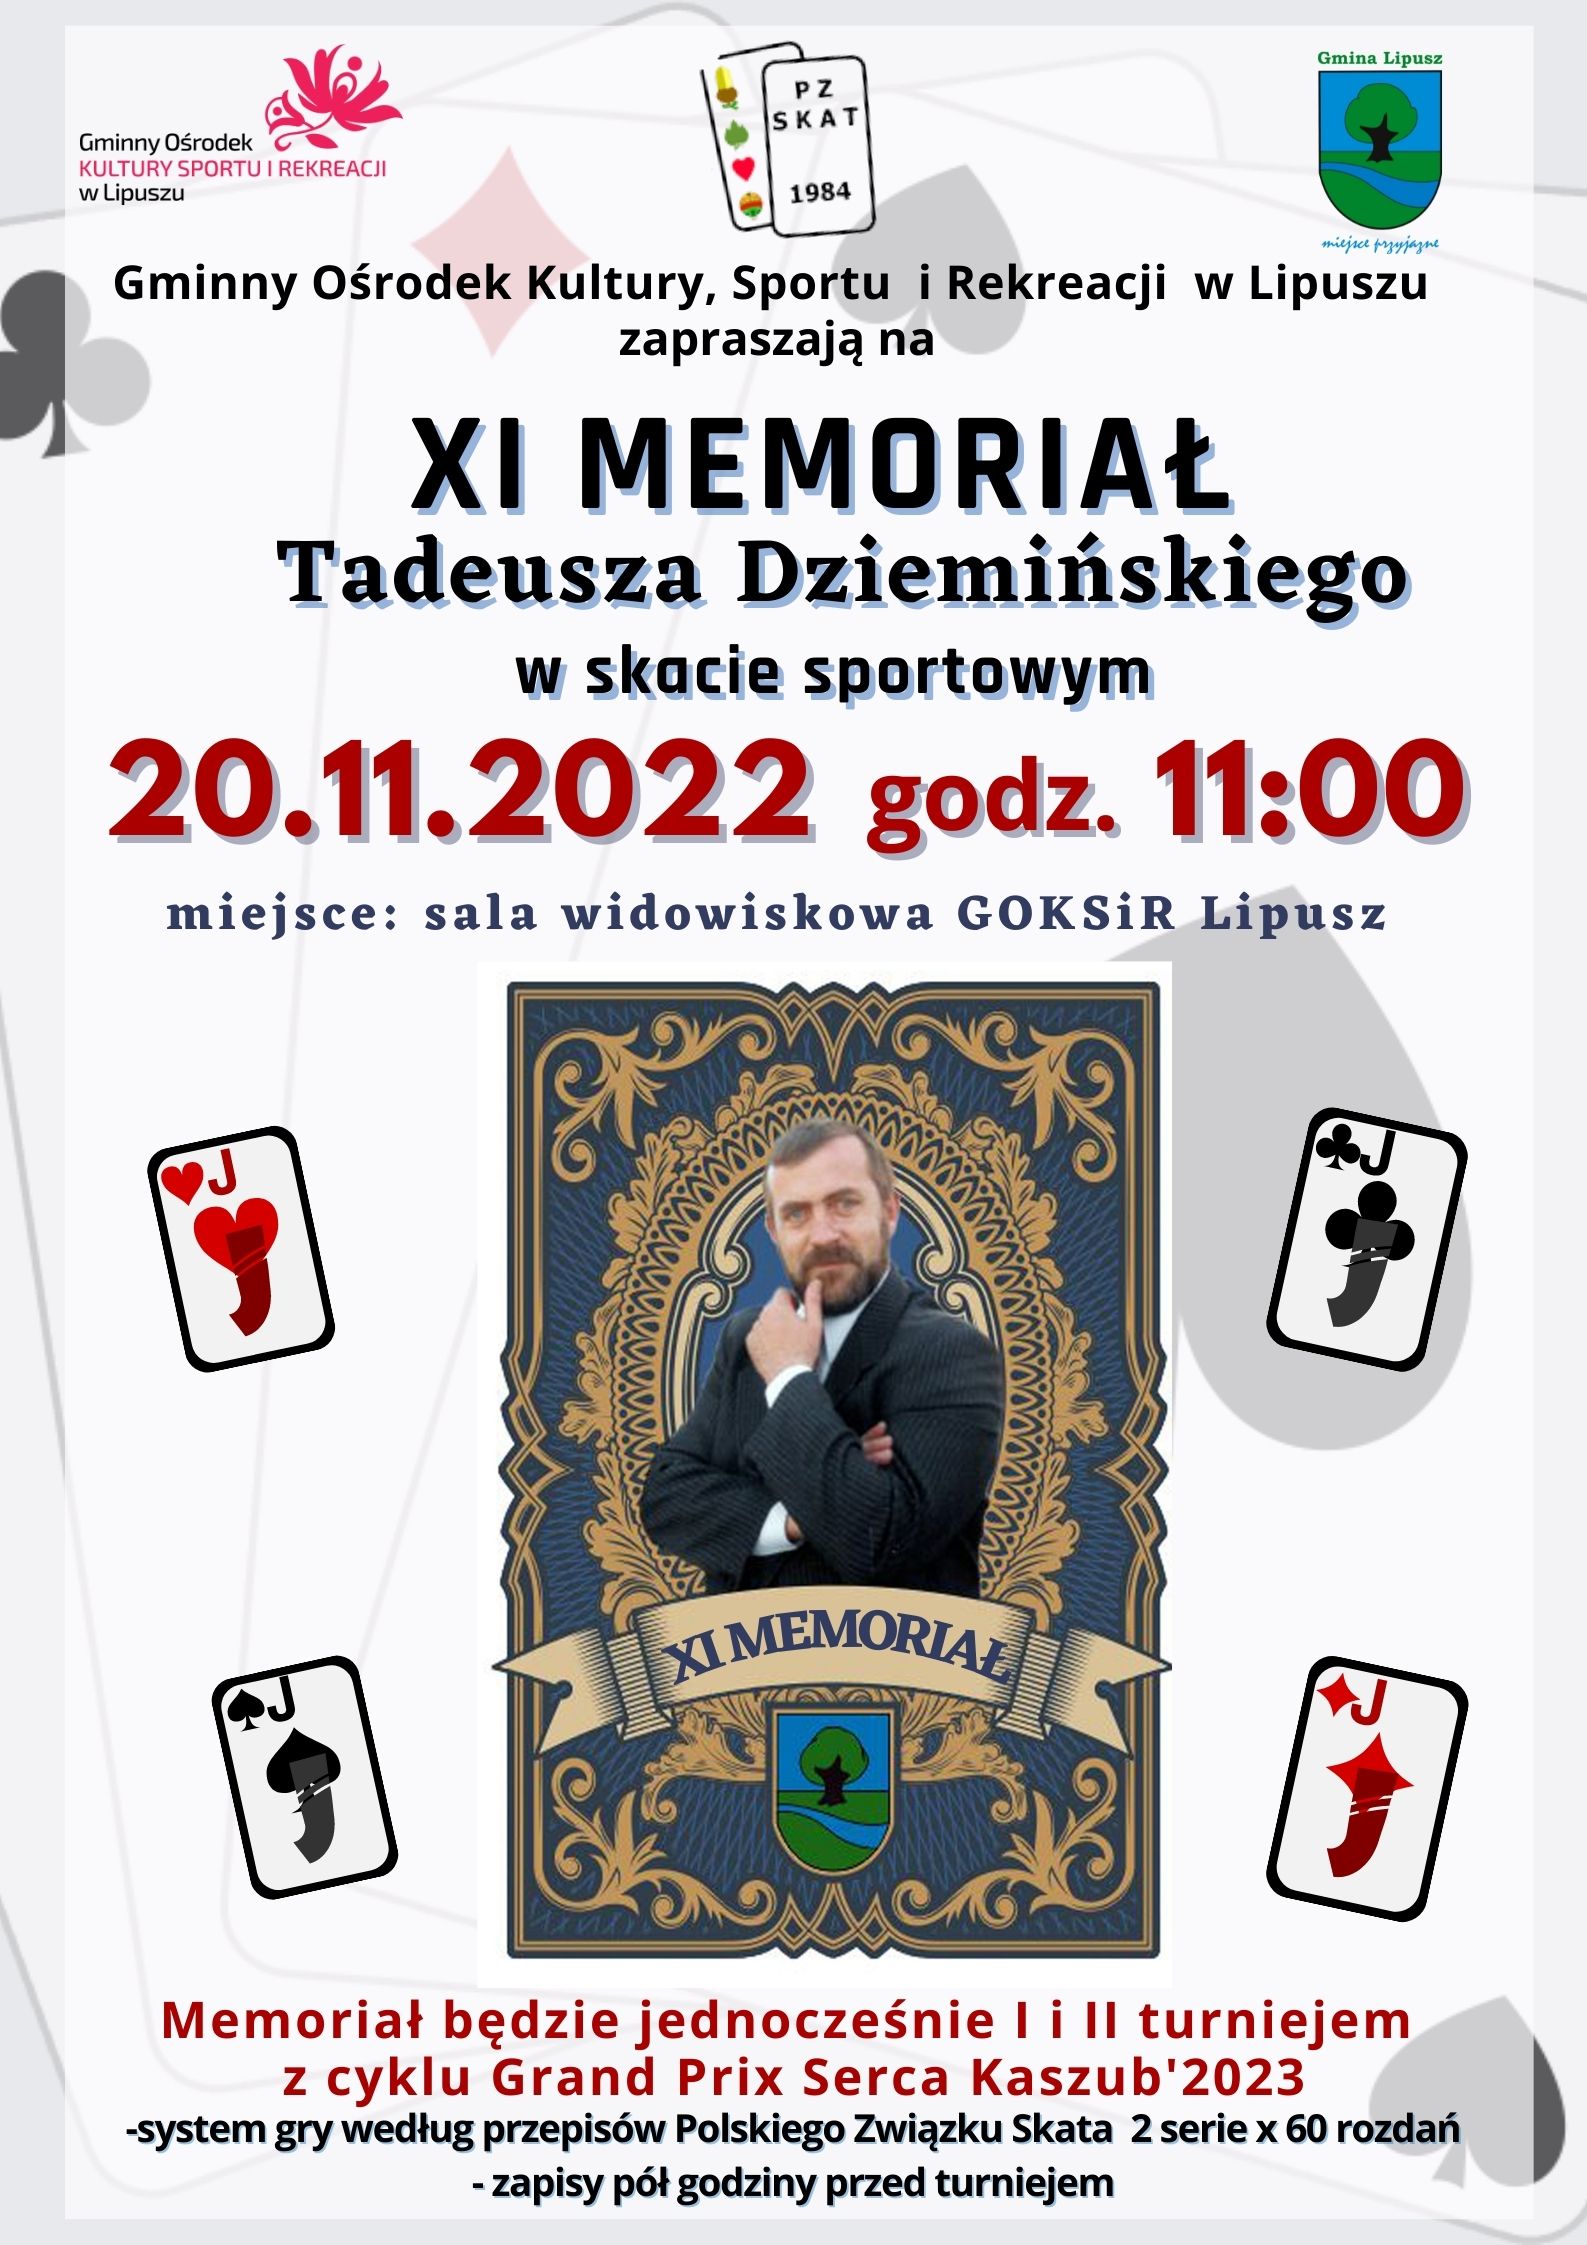 na zdjęciu widać podobizne Tadeusza Dziemińskiego na tle karty oraz informacje dotyczace turnieju